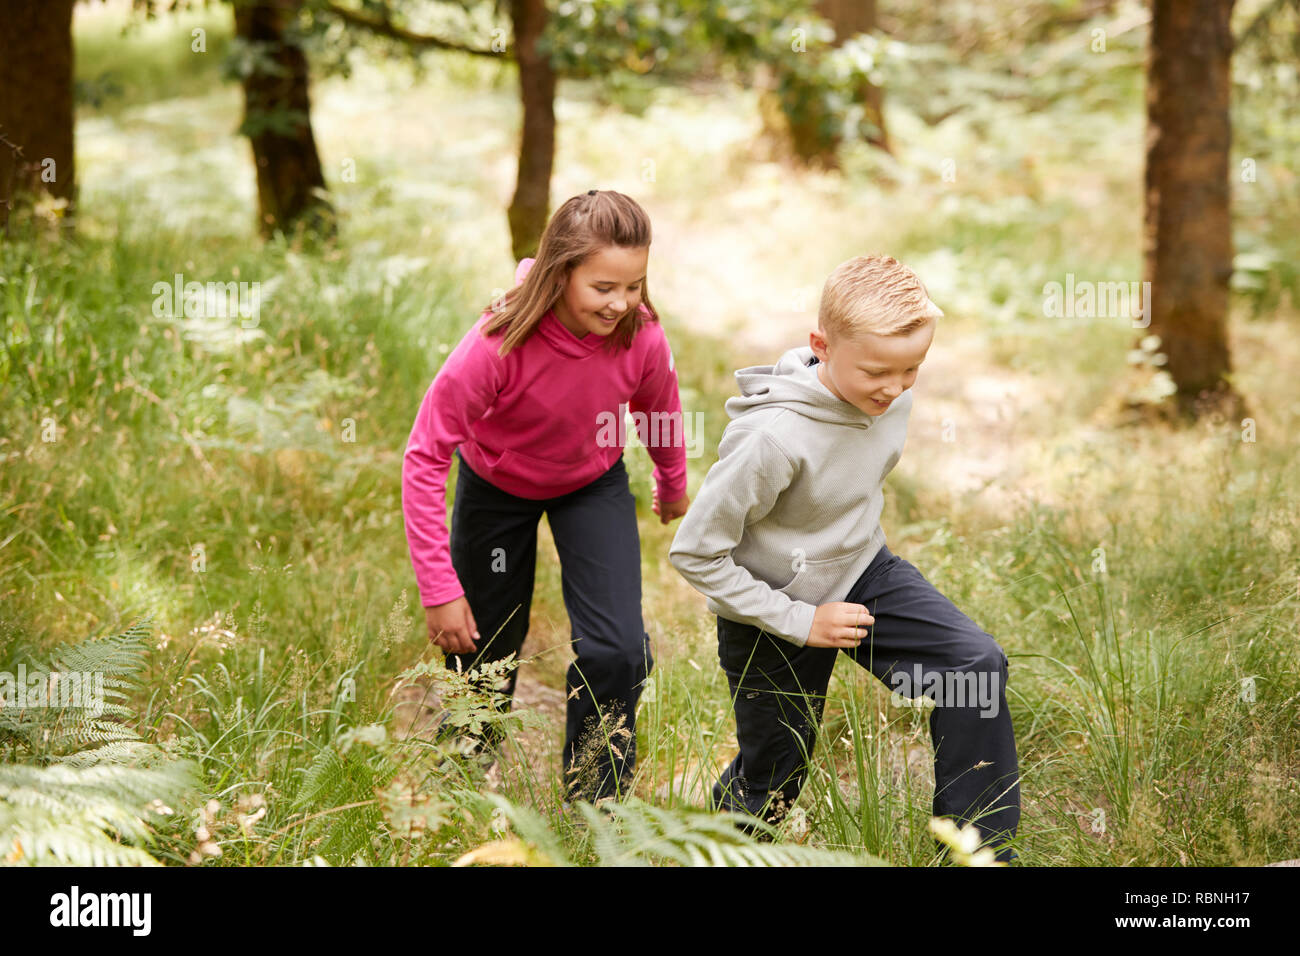 Zwei Kinder gemeinsam zu Fuß in einem Wald im Grünen, drei Viertel Länge, Seitenansicht Stockfoto